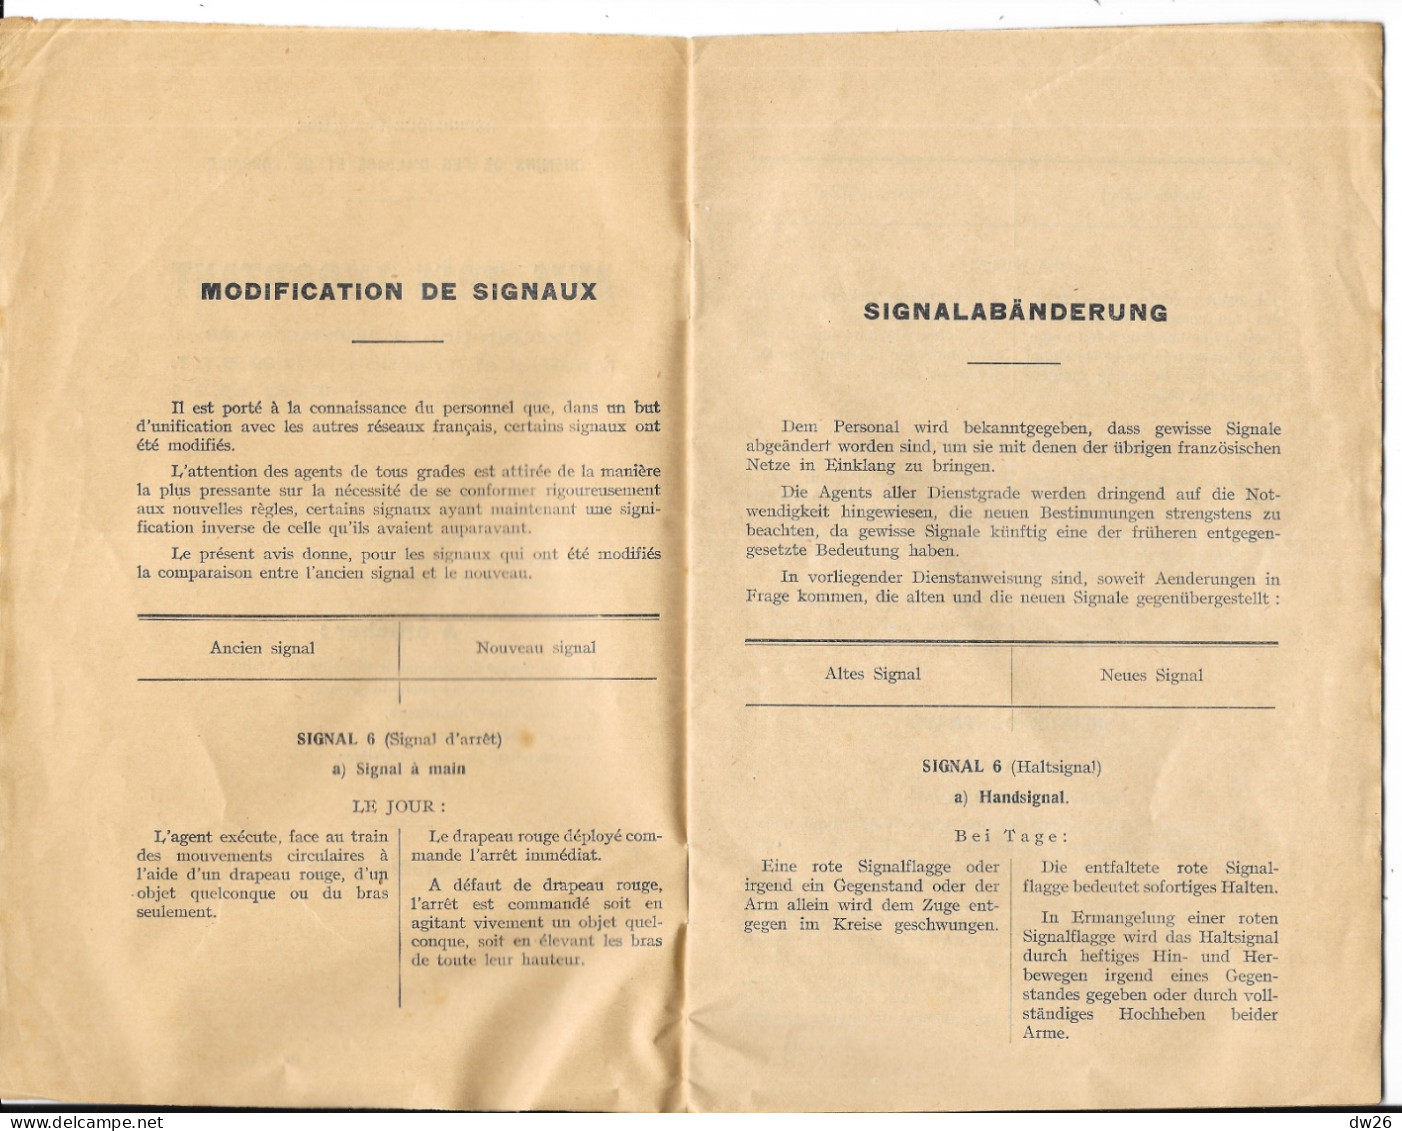 Chemins De Fer D'Alsace Et De Lorraine - Livret: Avis Très Important à Distribuer Aux Agents Cheminaux 1932 - Chemin De Fer